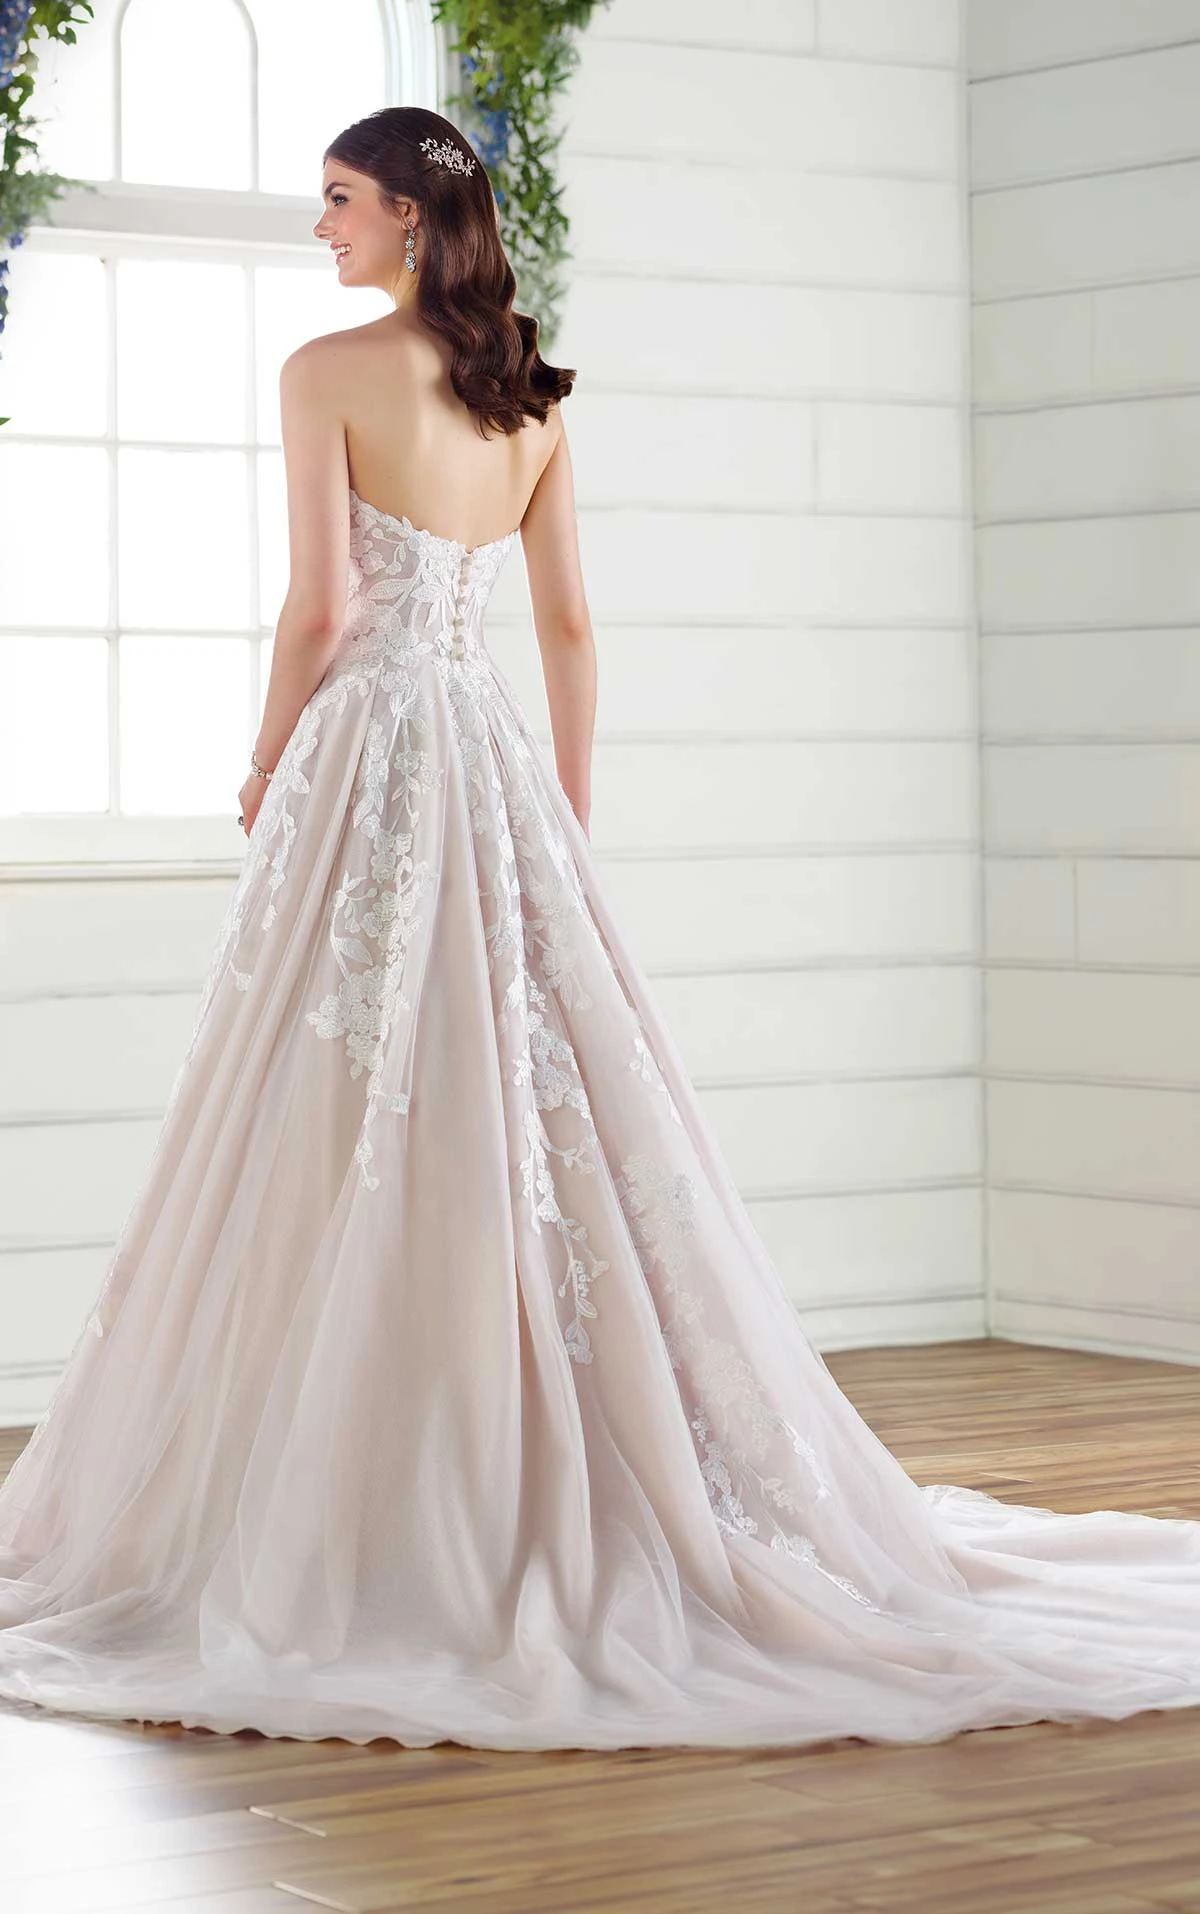 Garden-Inspired Strapless A-Line Wedding Gown